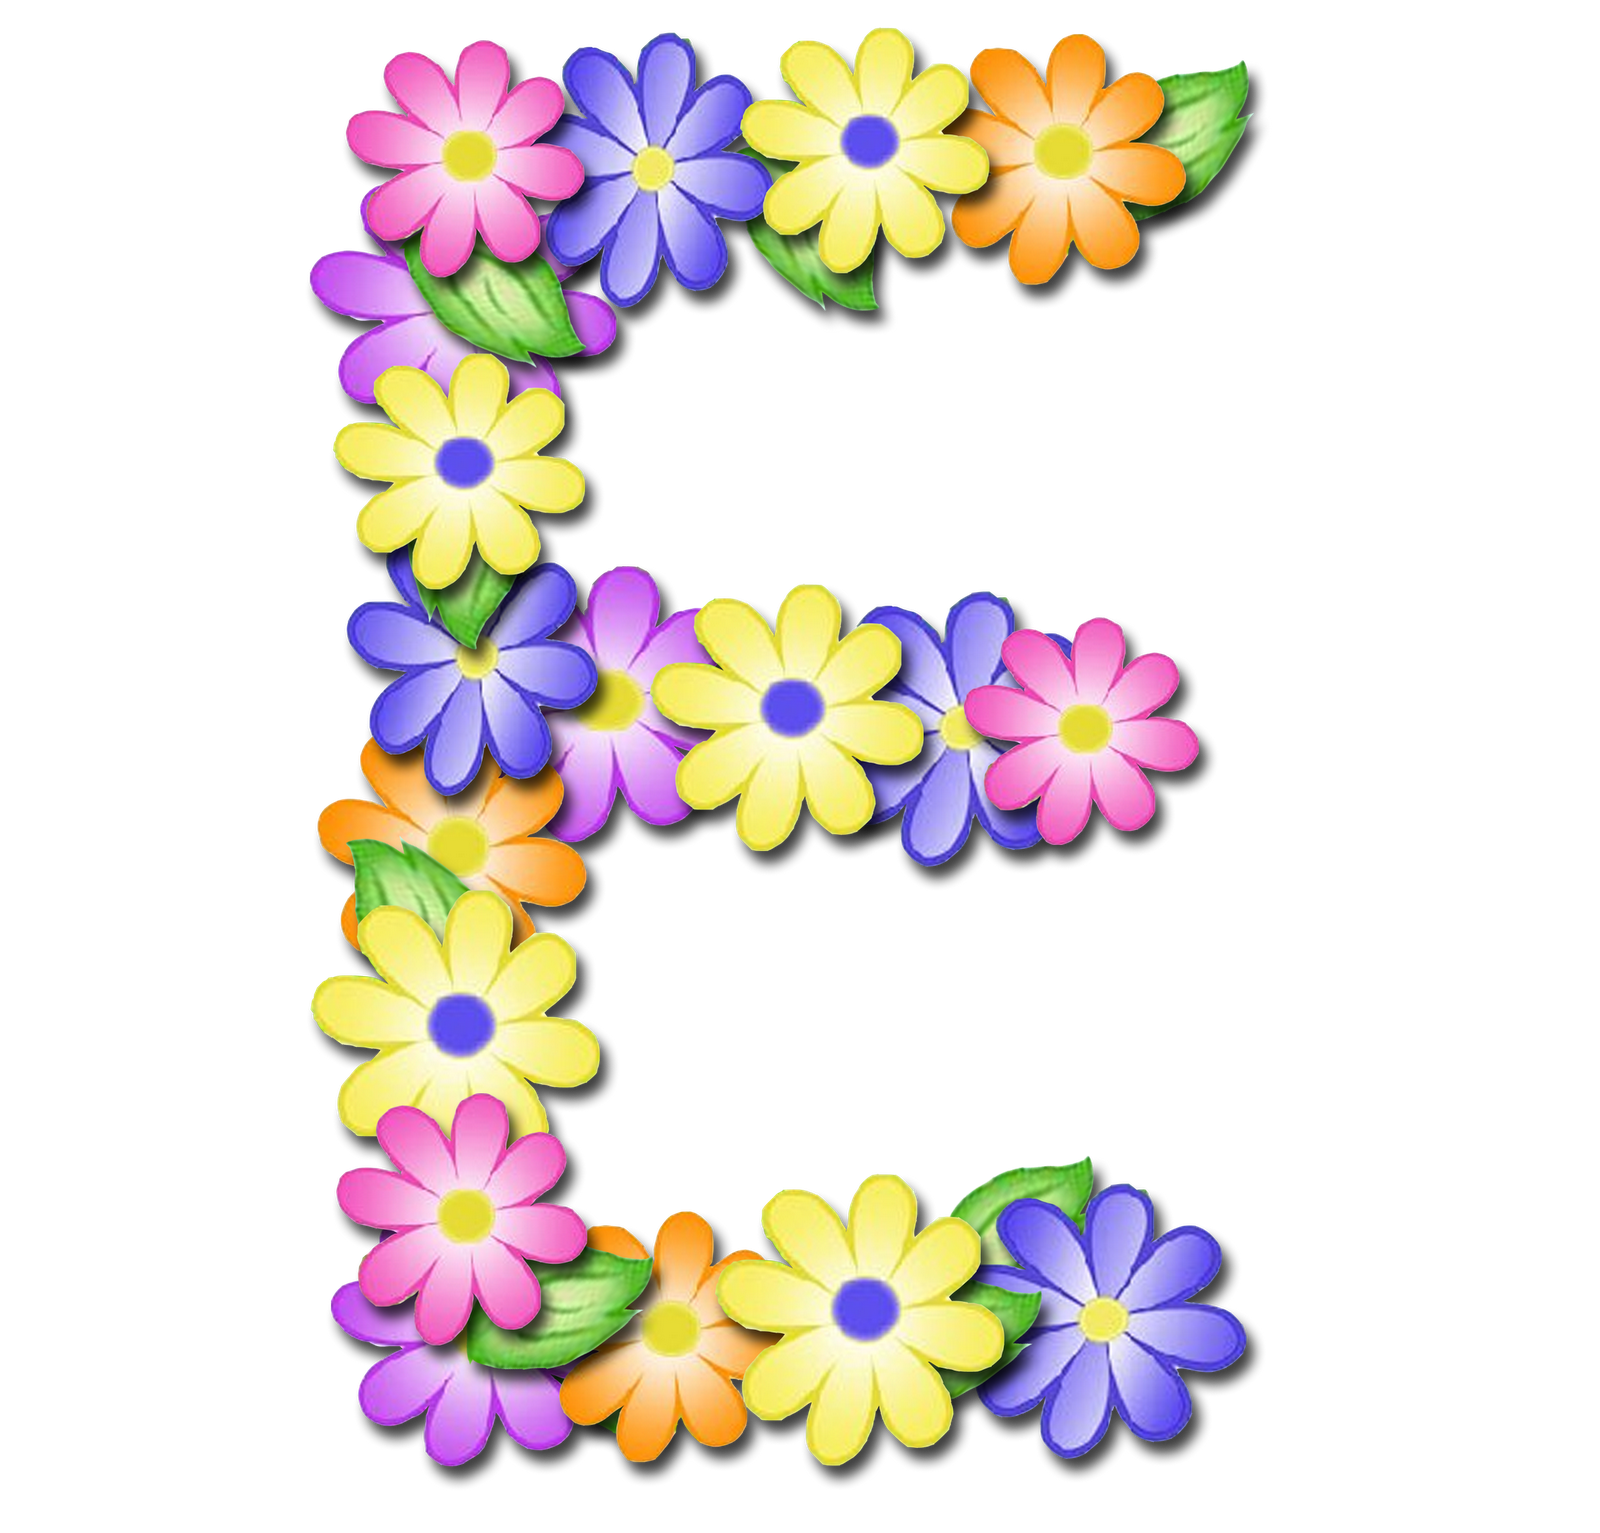 صور الحروف الإنجليزية بأجمل الزهور والورود بخلفية شفافة بنج png وجودة عالية للمصممين :: إبحث عن حروف إسمك بالإنجليزية P_16992r2h65